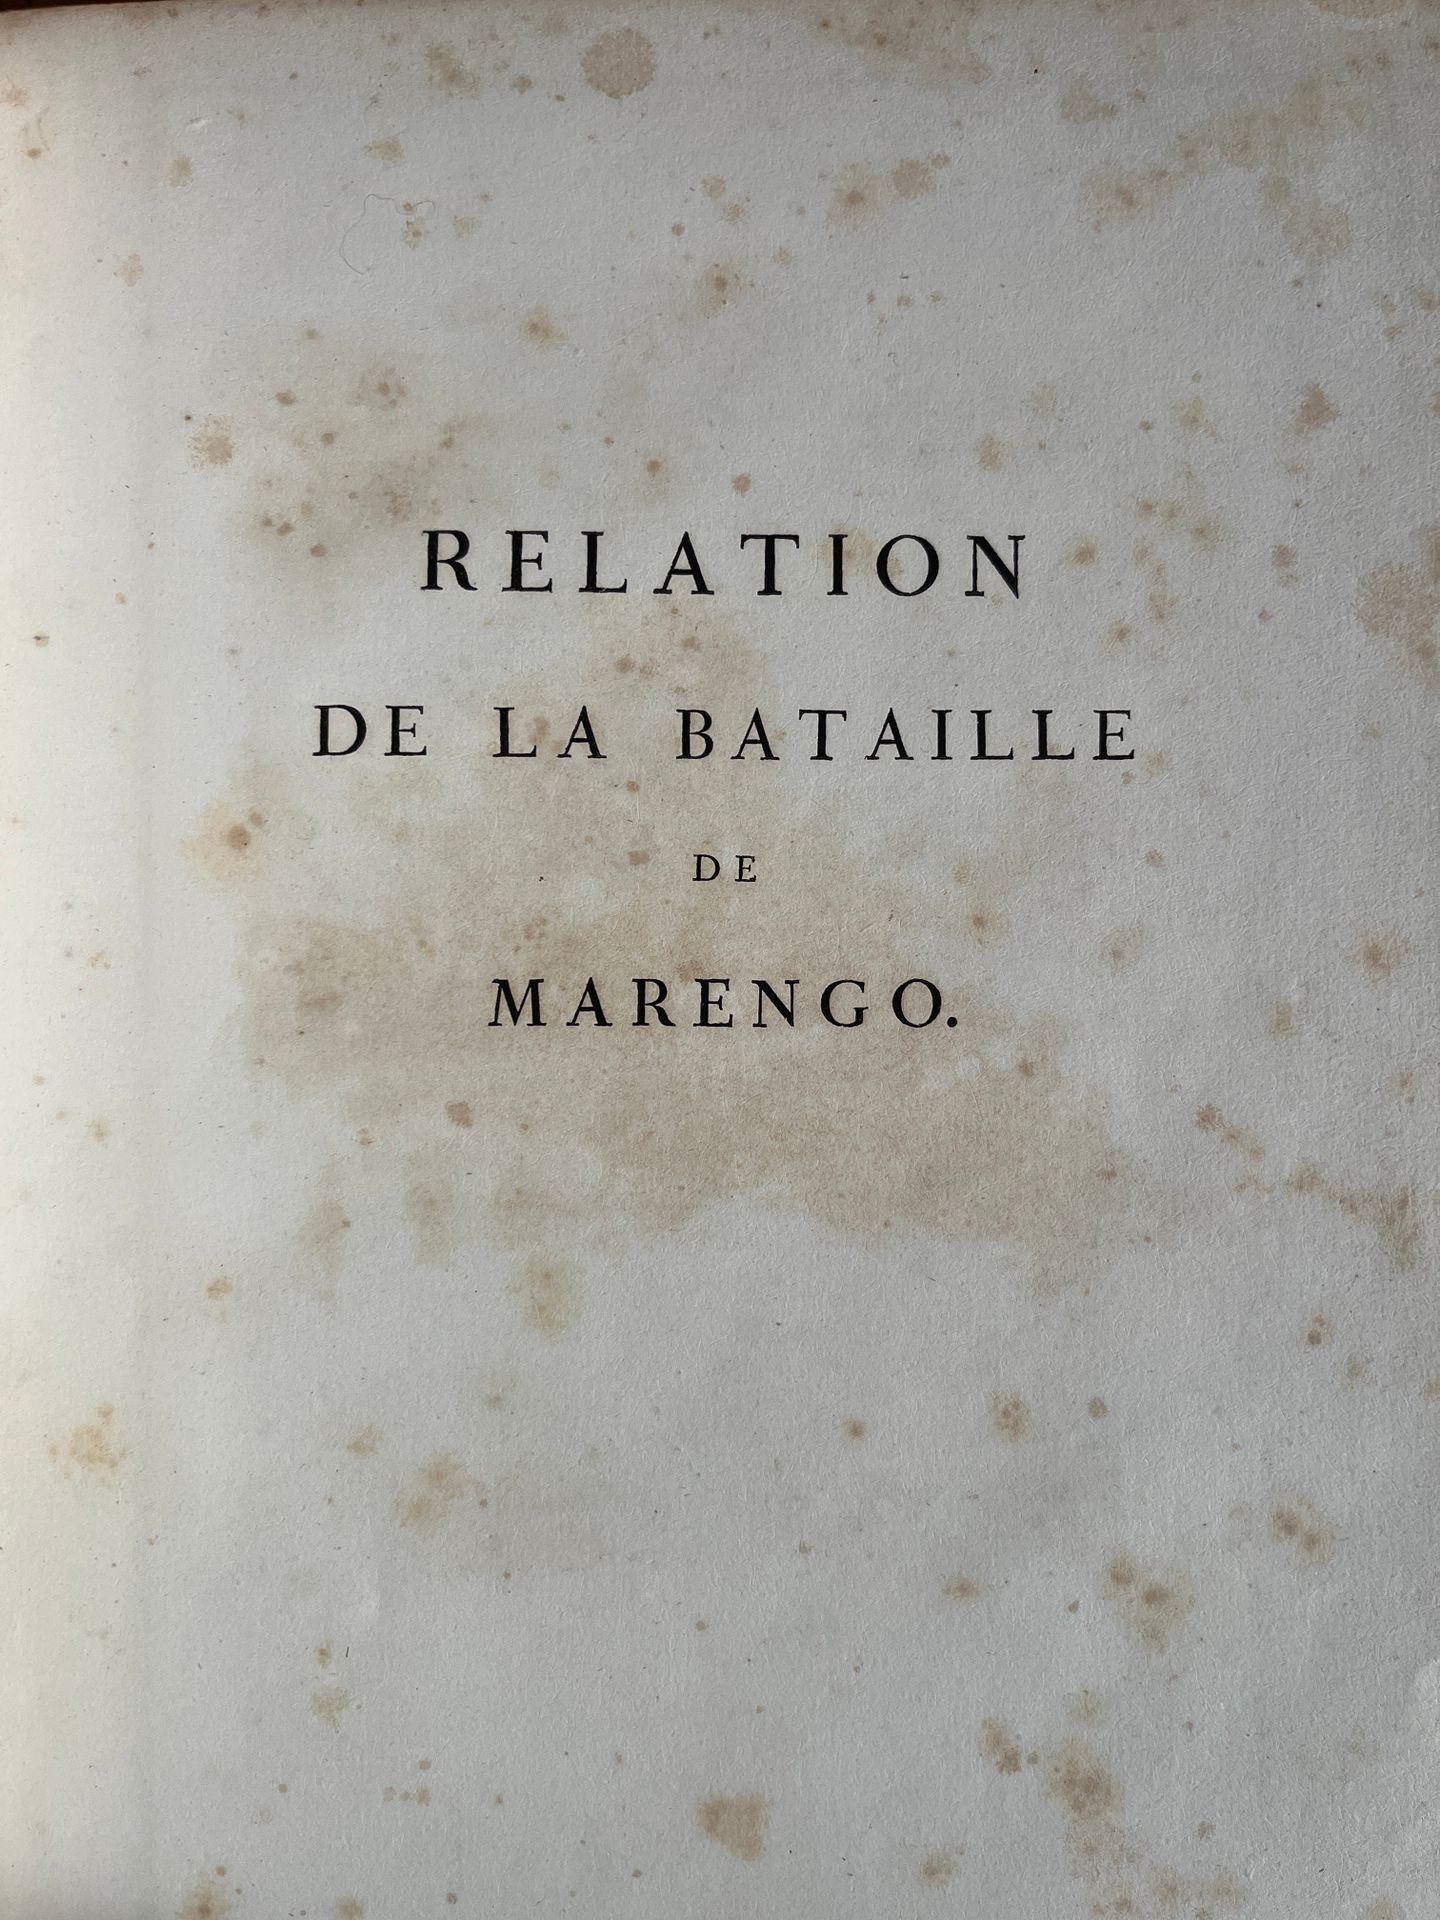 Null [BATTLE]
Relation of the battle of Marengo. Paris, chez Alex Berthier 1806.&hellip;